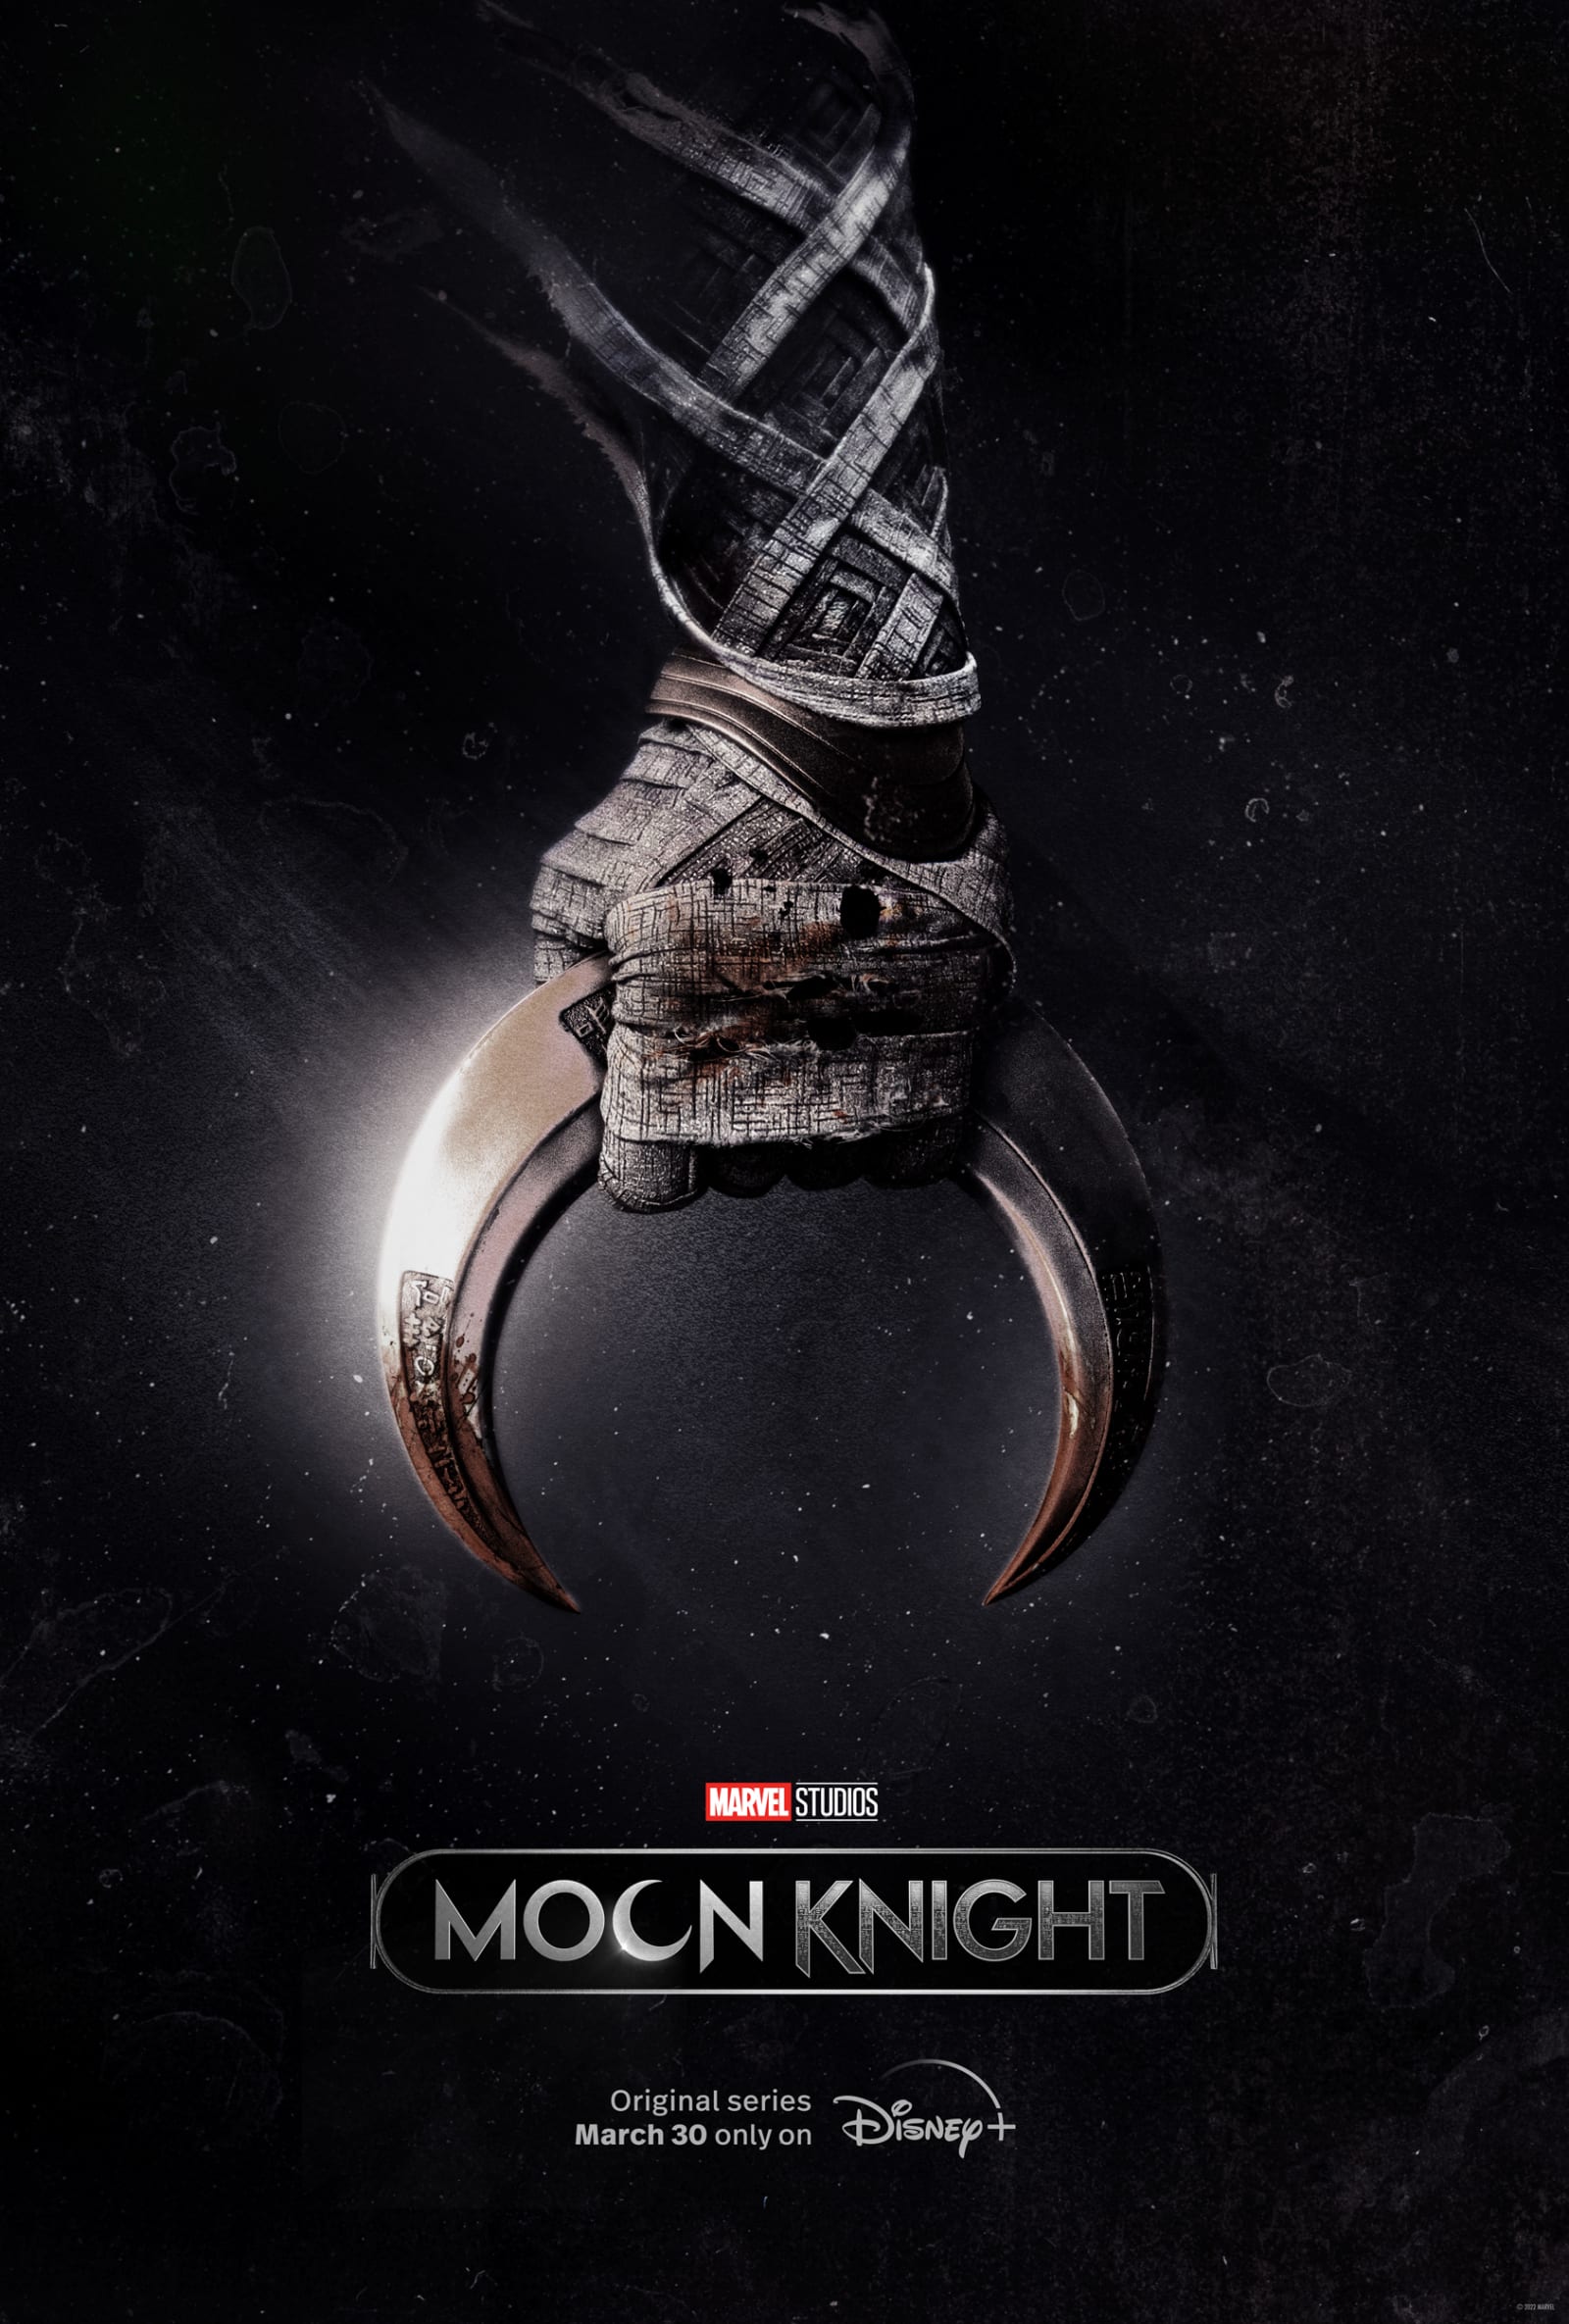 Moon Knight Trailer Breakdown: Details You Definitely Missed - FandomWire